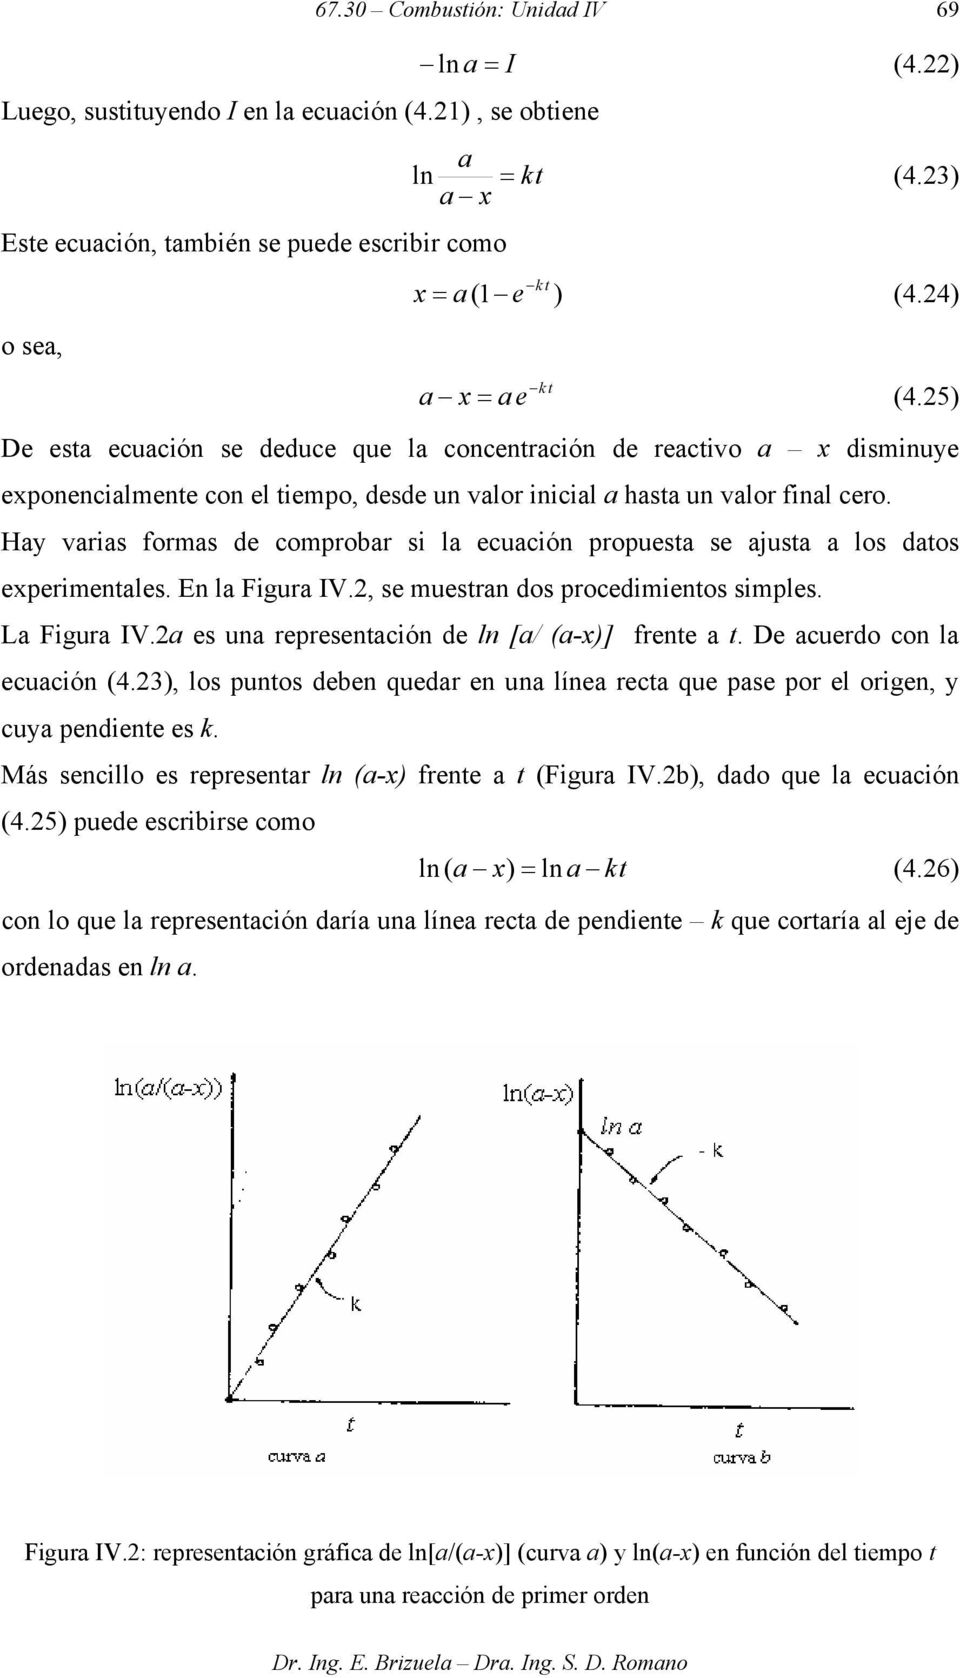 Hay varias formas de comprobar si la ecuación propuesta se ajusta a los datos experimentales. En la Figura IV., se muestran dos procedimientos simples. La Figura IV.